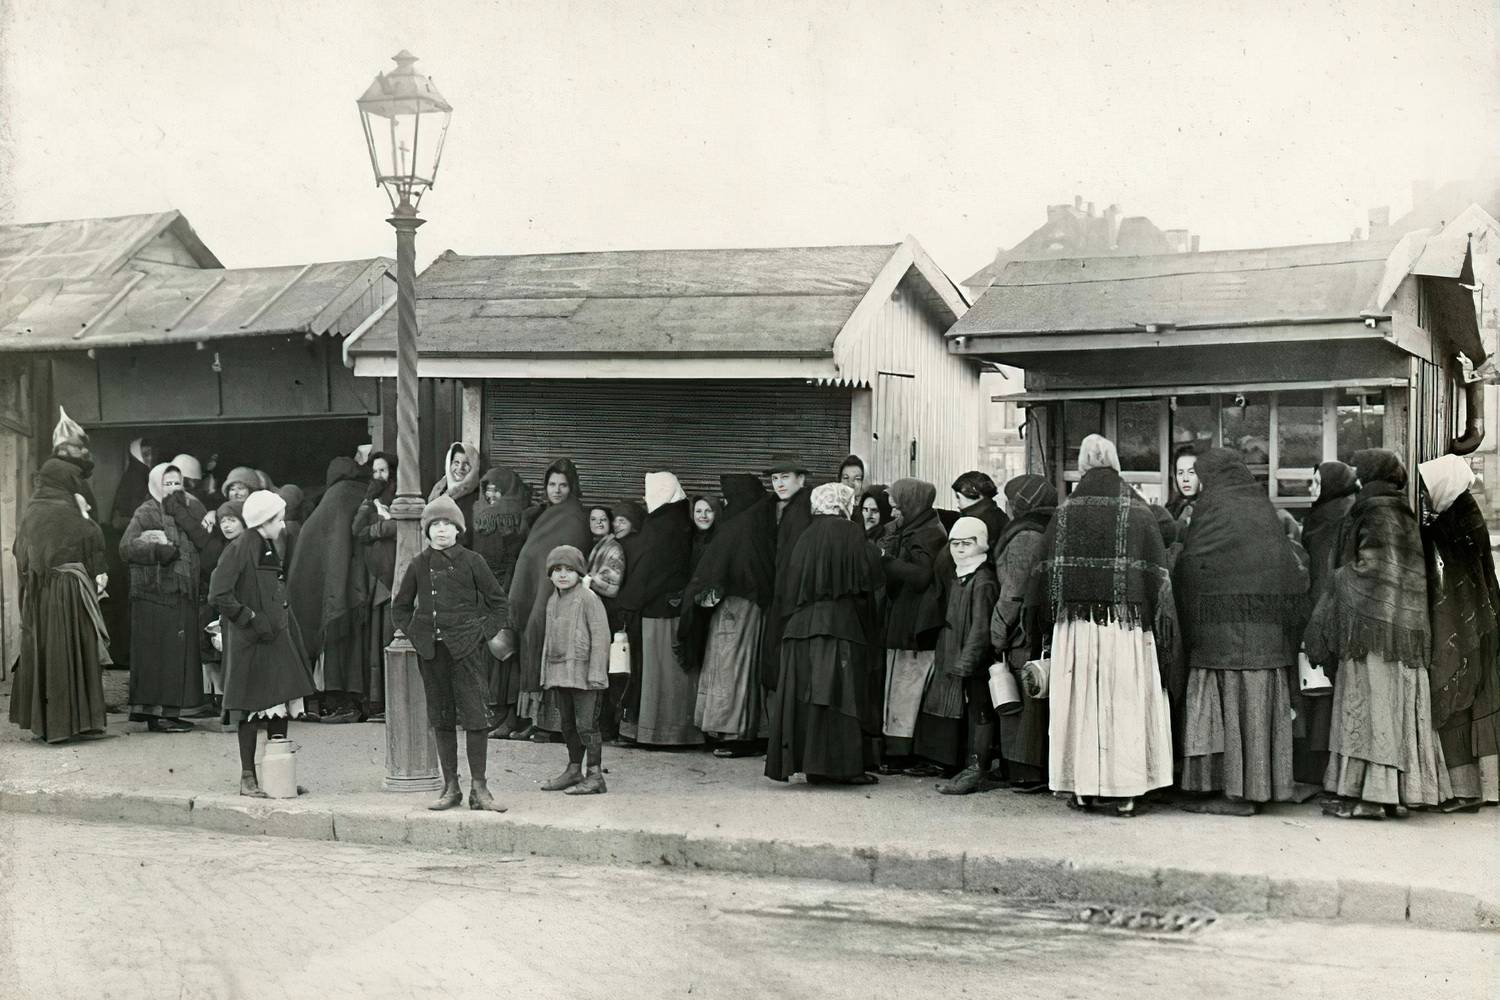 1915 - Teleki László tér, nők és gyermekek tejért állnak sorba.